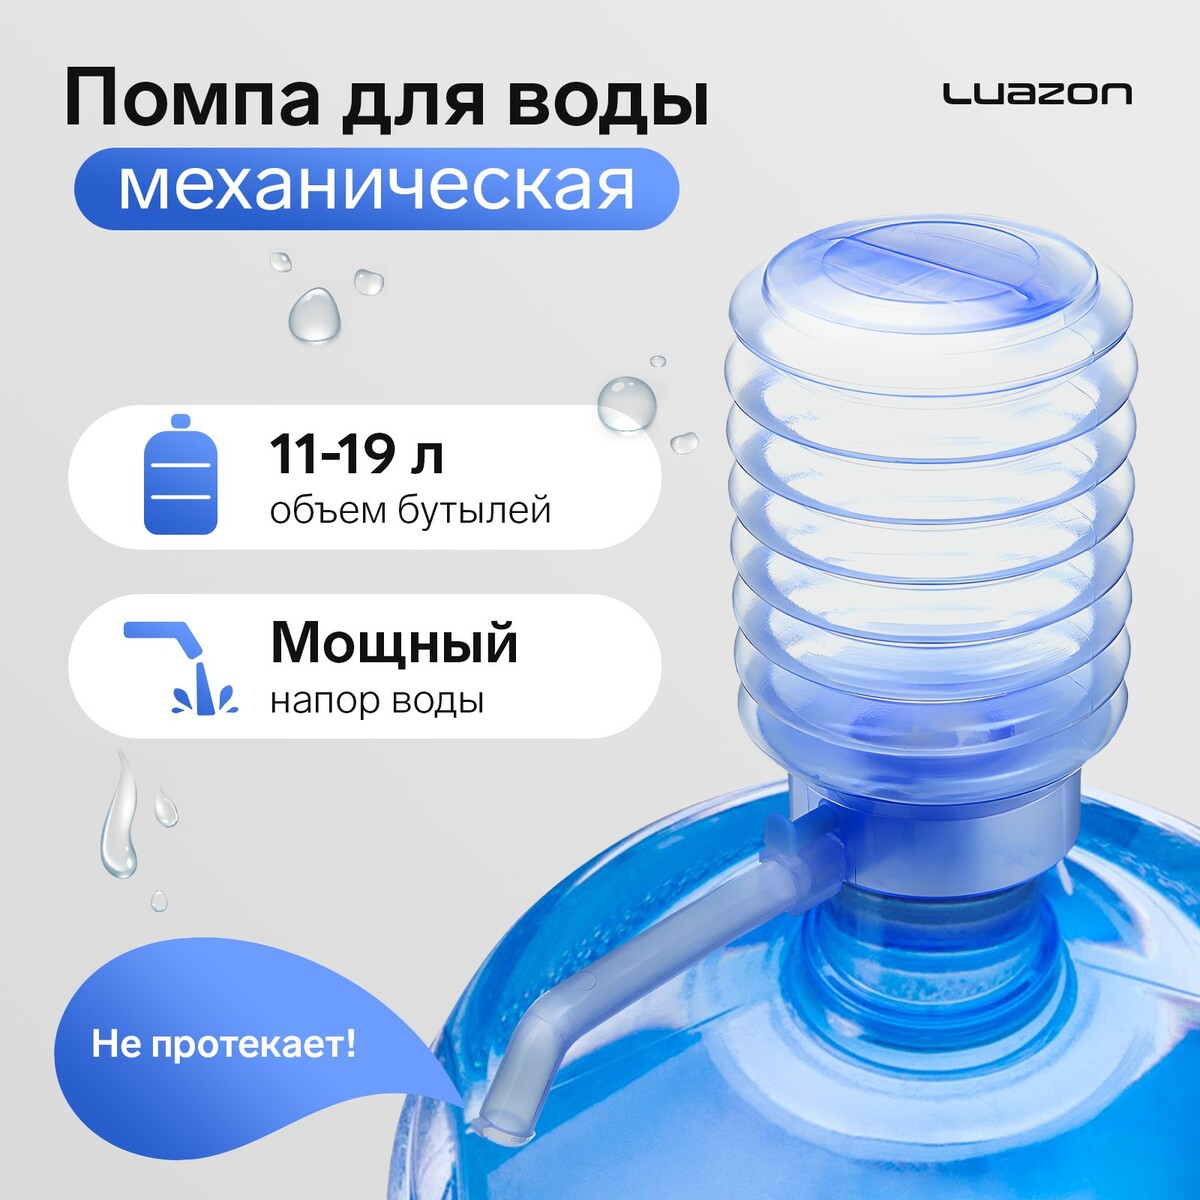 Помпа для воды luazon, механическая, прозрачная, под бутыль от 11 до 19 л, голубая фильтр для воды аквабрайт абф триа умягчение для холодной воды система под мойку